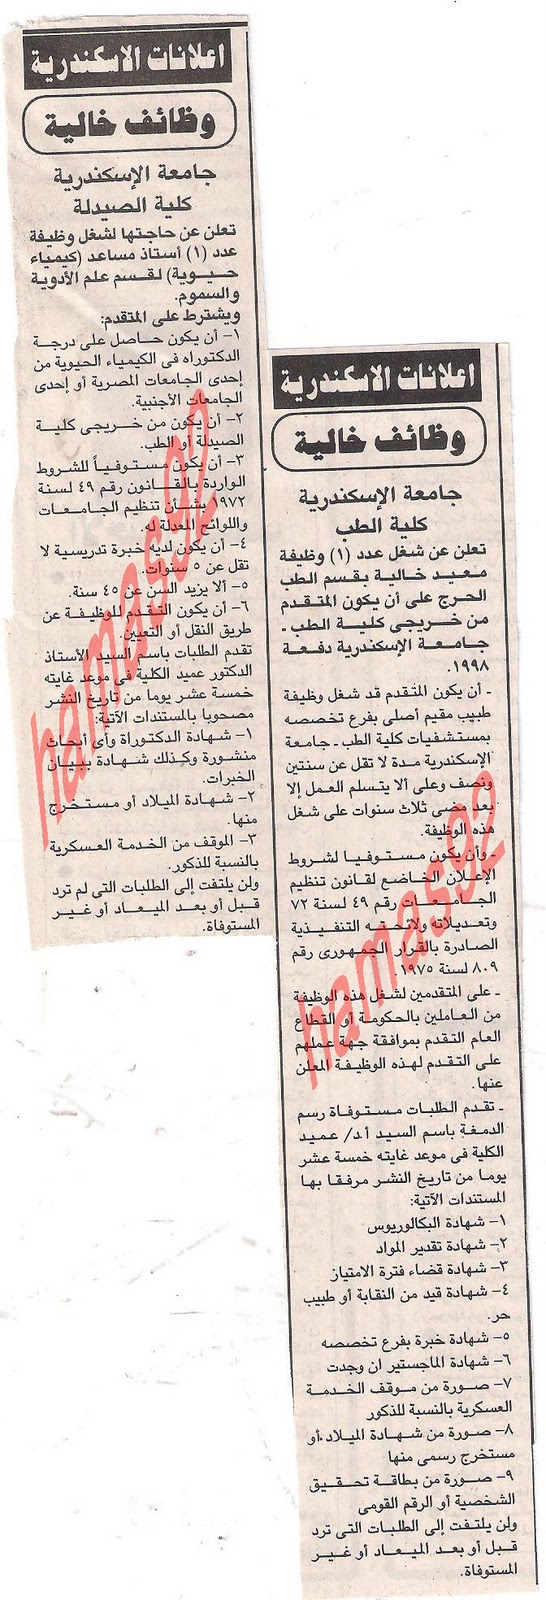 اعلان محافظة شمال سيناء , مديرية التربية والنعليم وزارة التنمية المحلية Picture+003